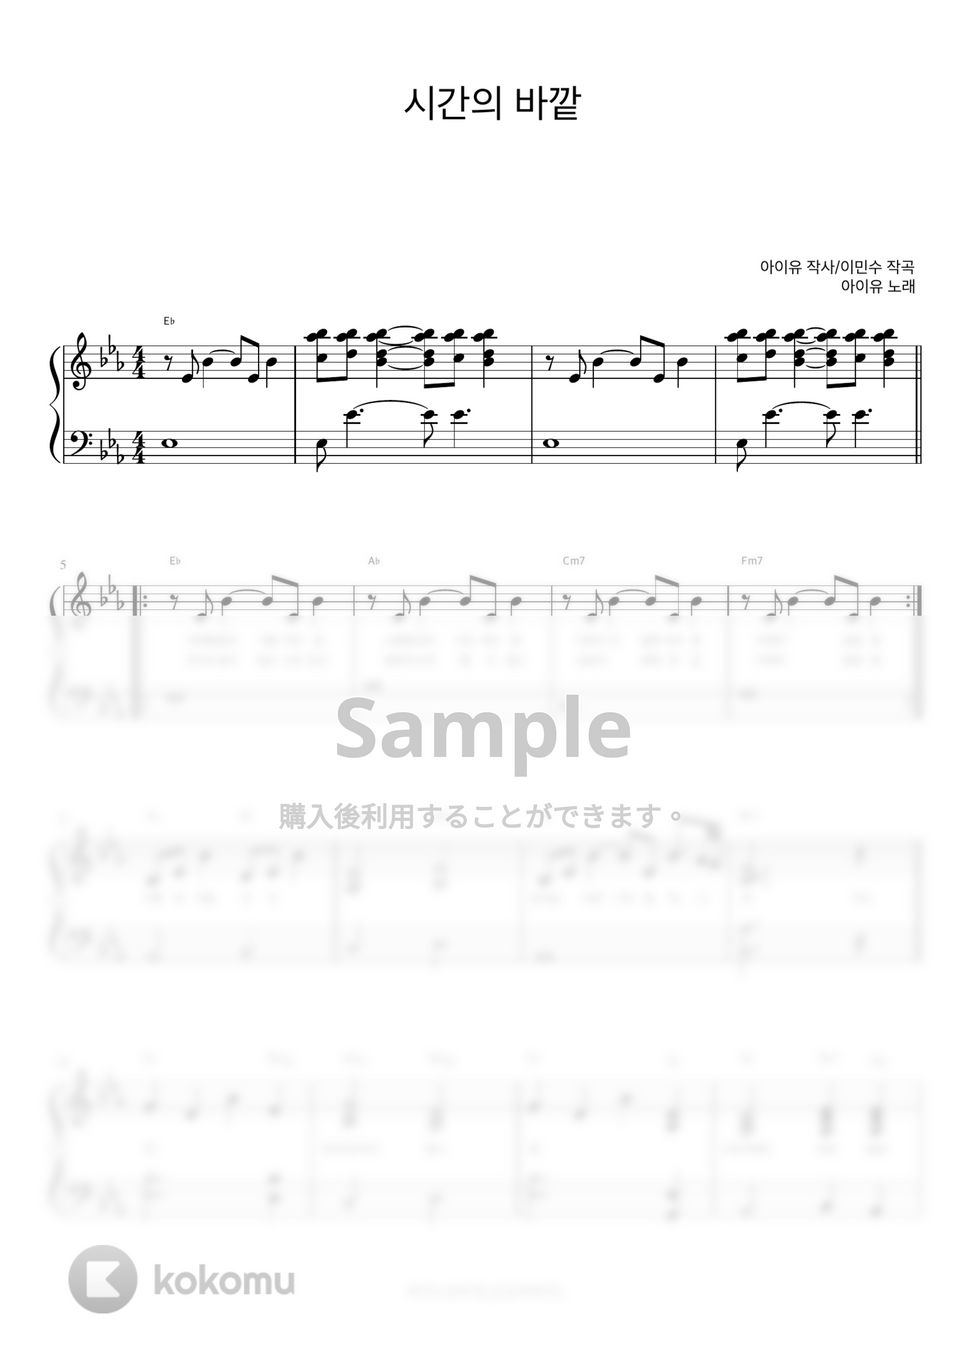 아이유 (IU) - 시간의 바깥 (반주악보) by 피아노정류장